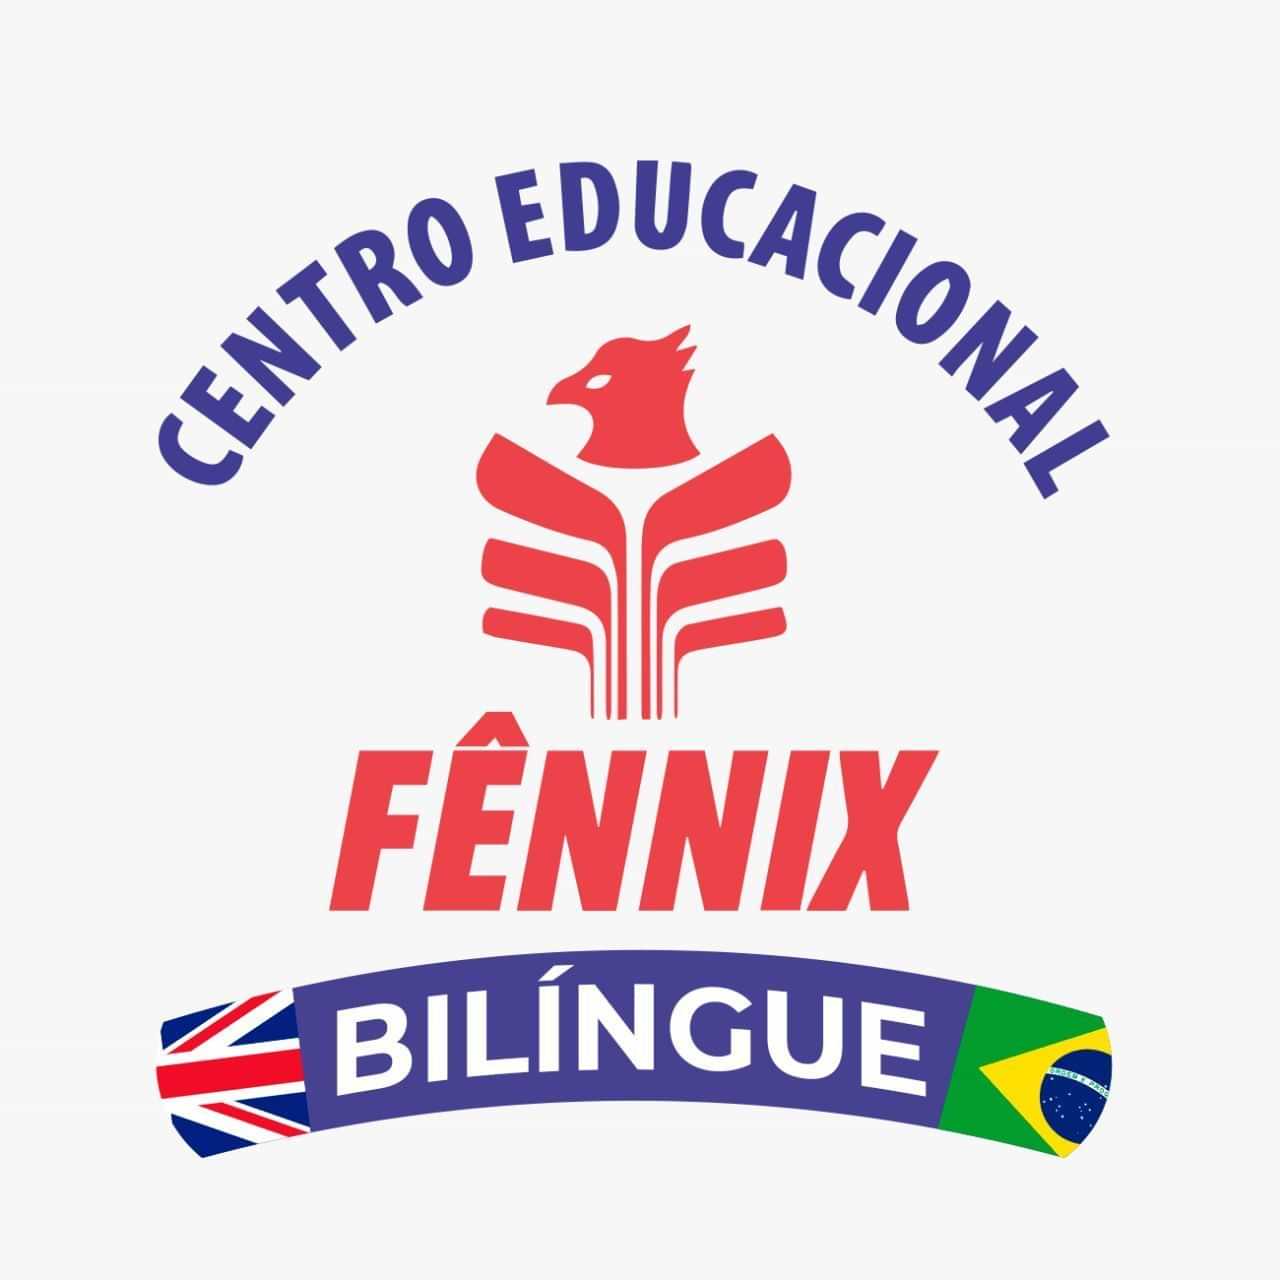  Centro Educacional Fennix 